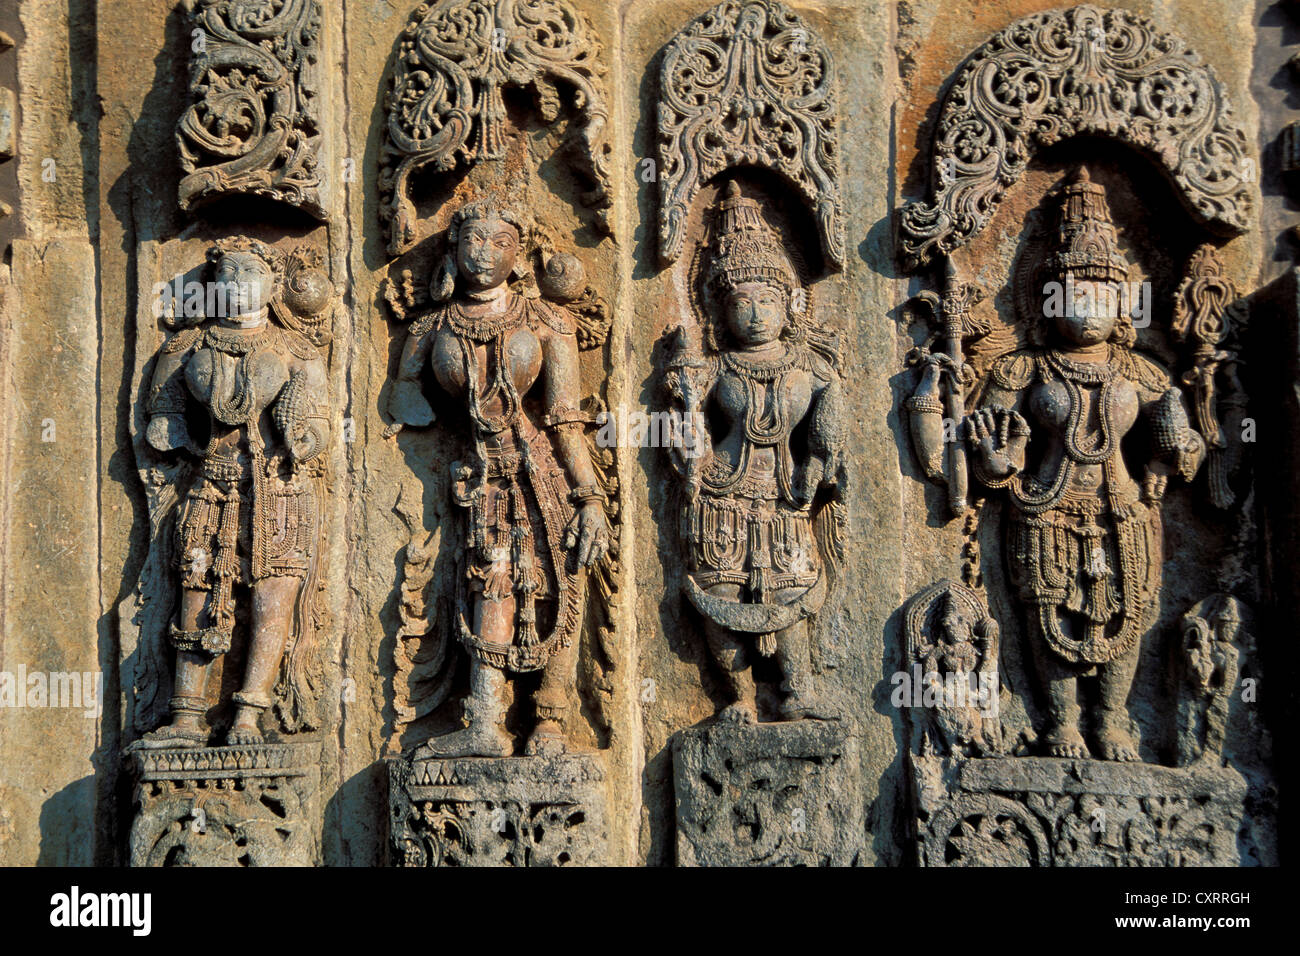 Statuen von Gottheiten, Reliefs an der Außenwand, Chennakesava Bügel, Hoysala Stil, Belur, Karnataka, Südindien, Indien Stockfoto